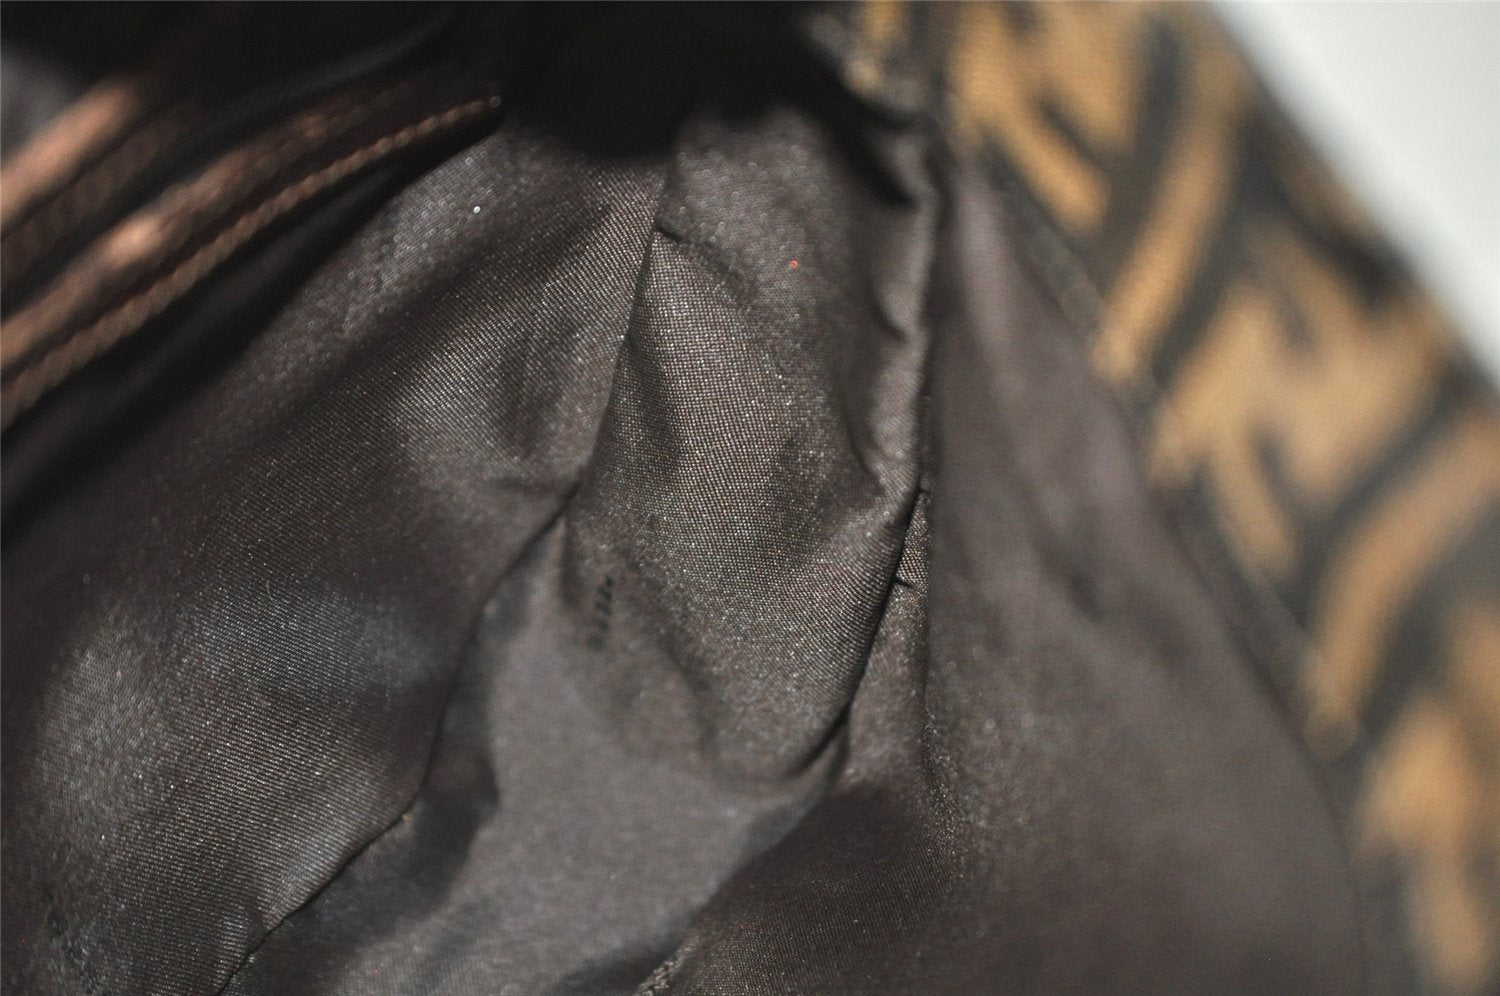 Authentic FENDI Vintage Zucca Shoulder Hand Bag Purse Canvas Leather Brown 7006J